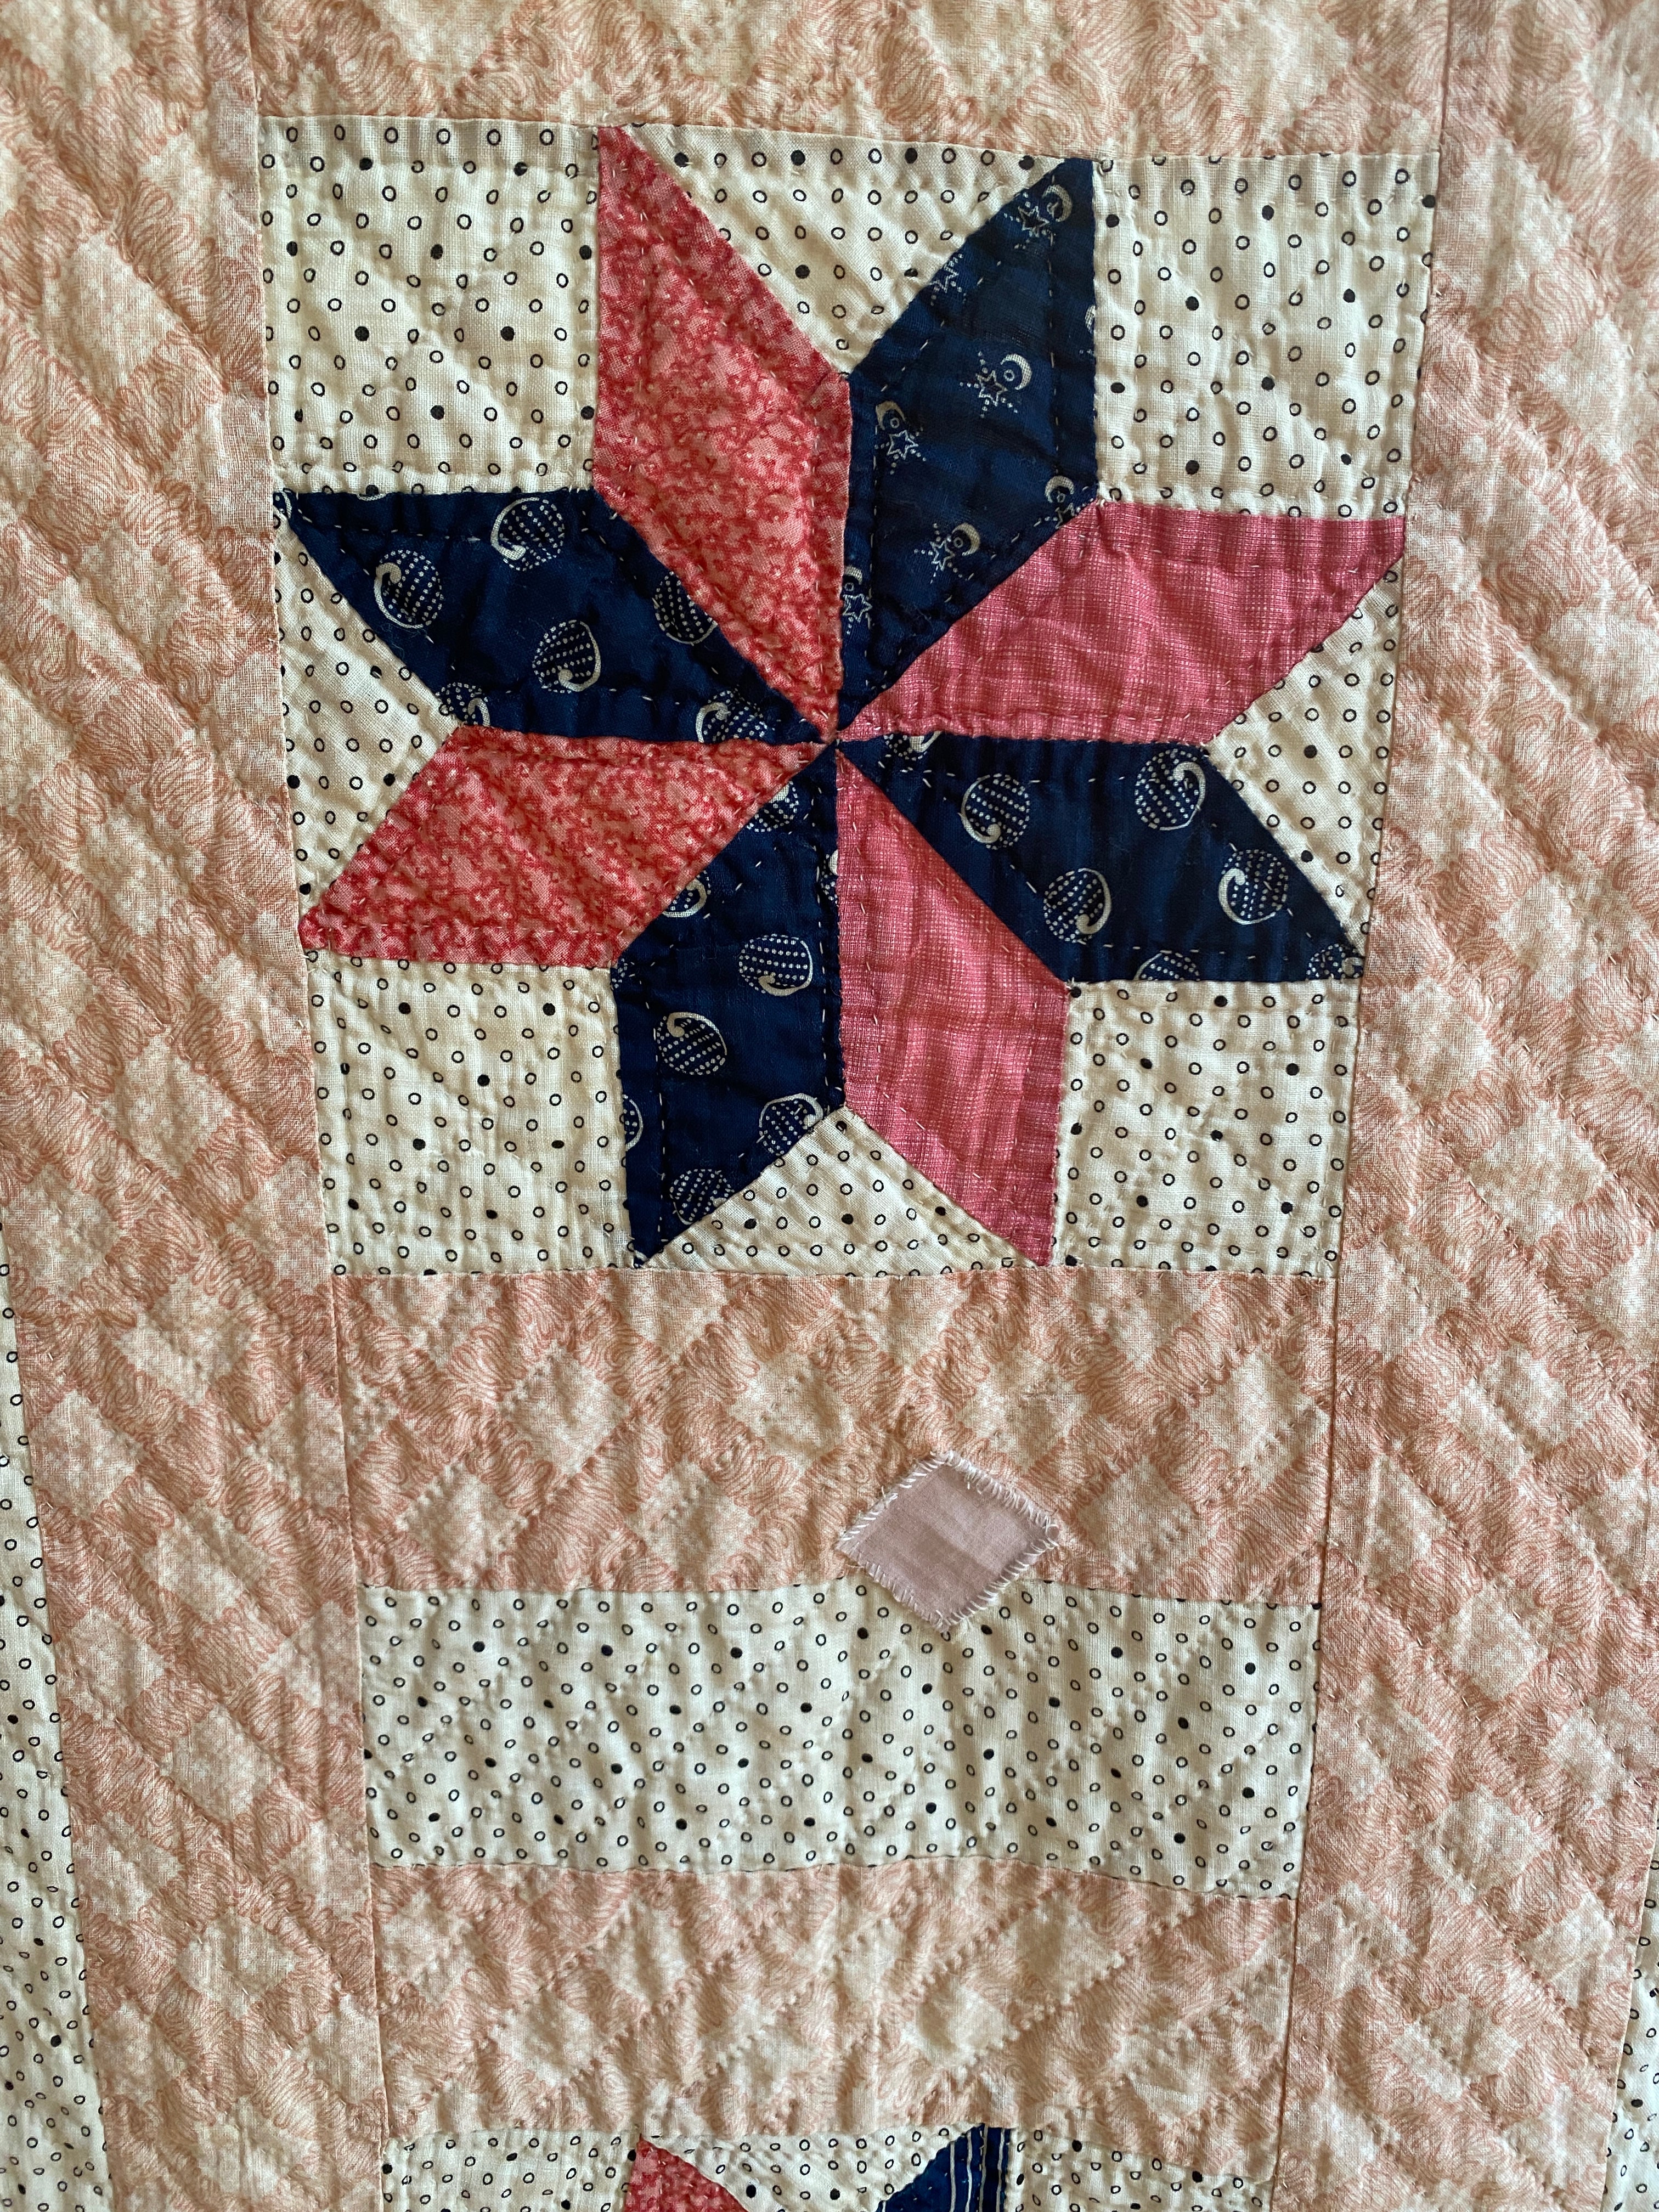 Antique 1850-1890 8 Point Star Patchwork Quilt